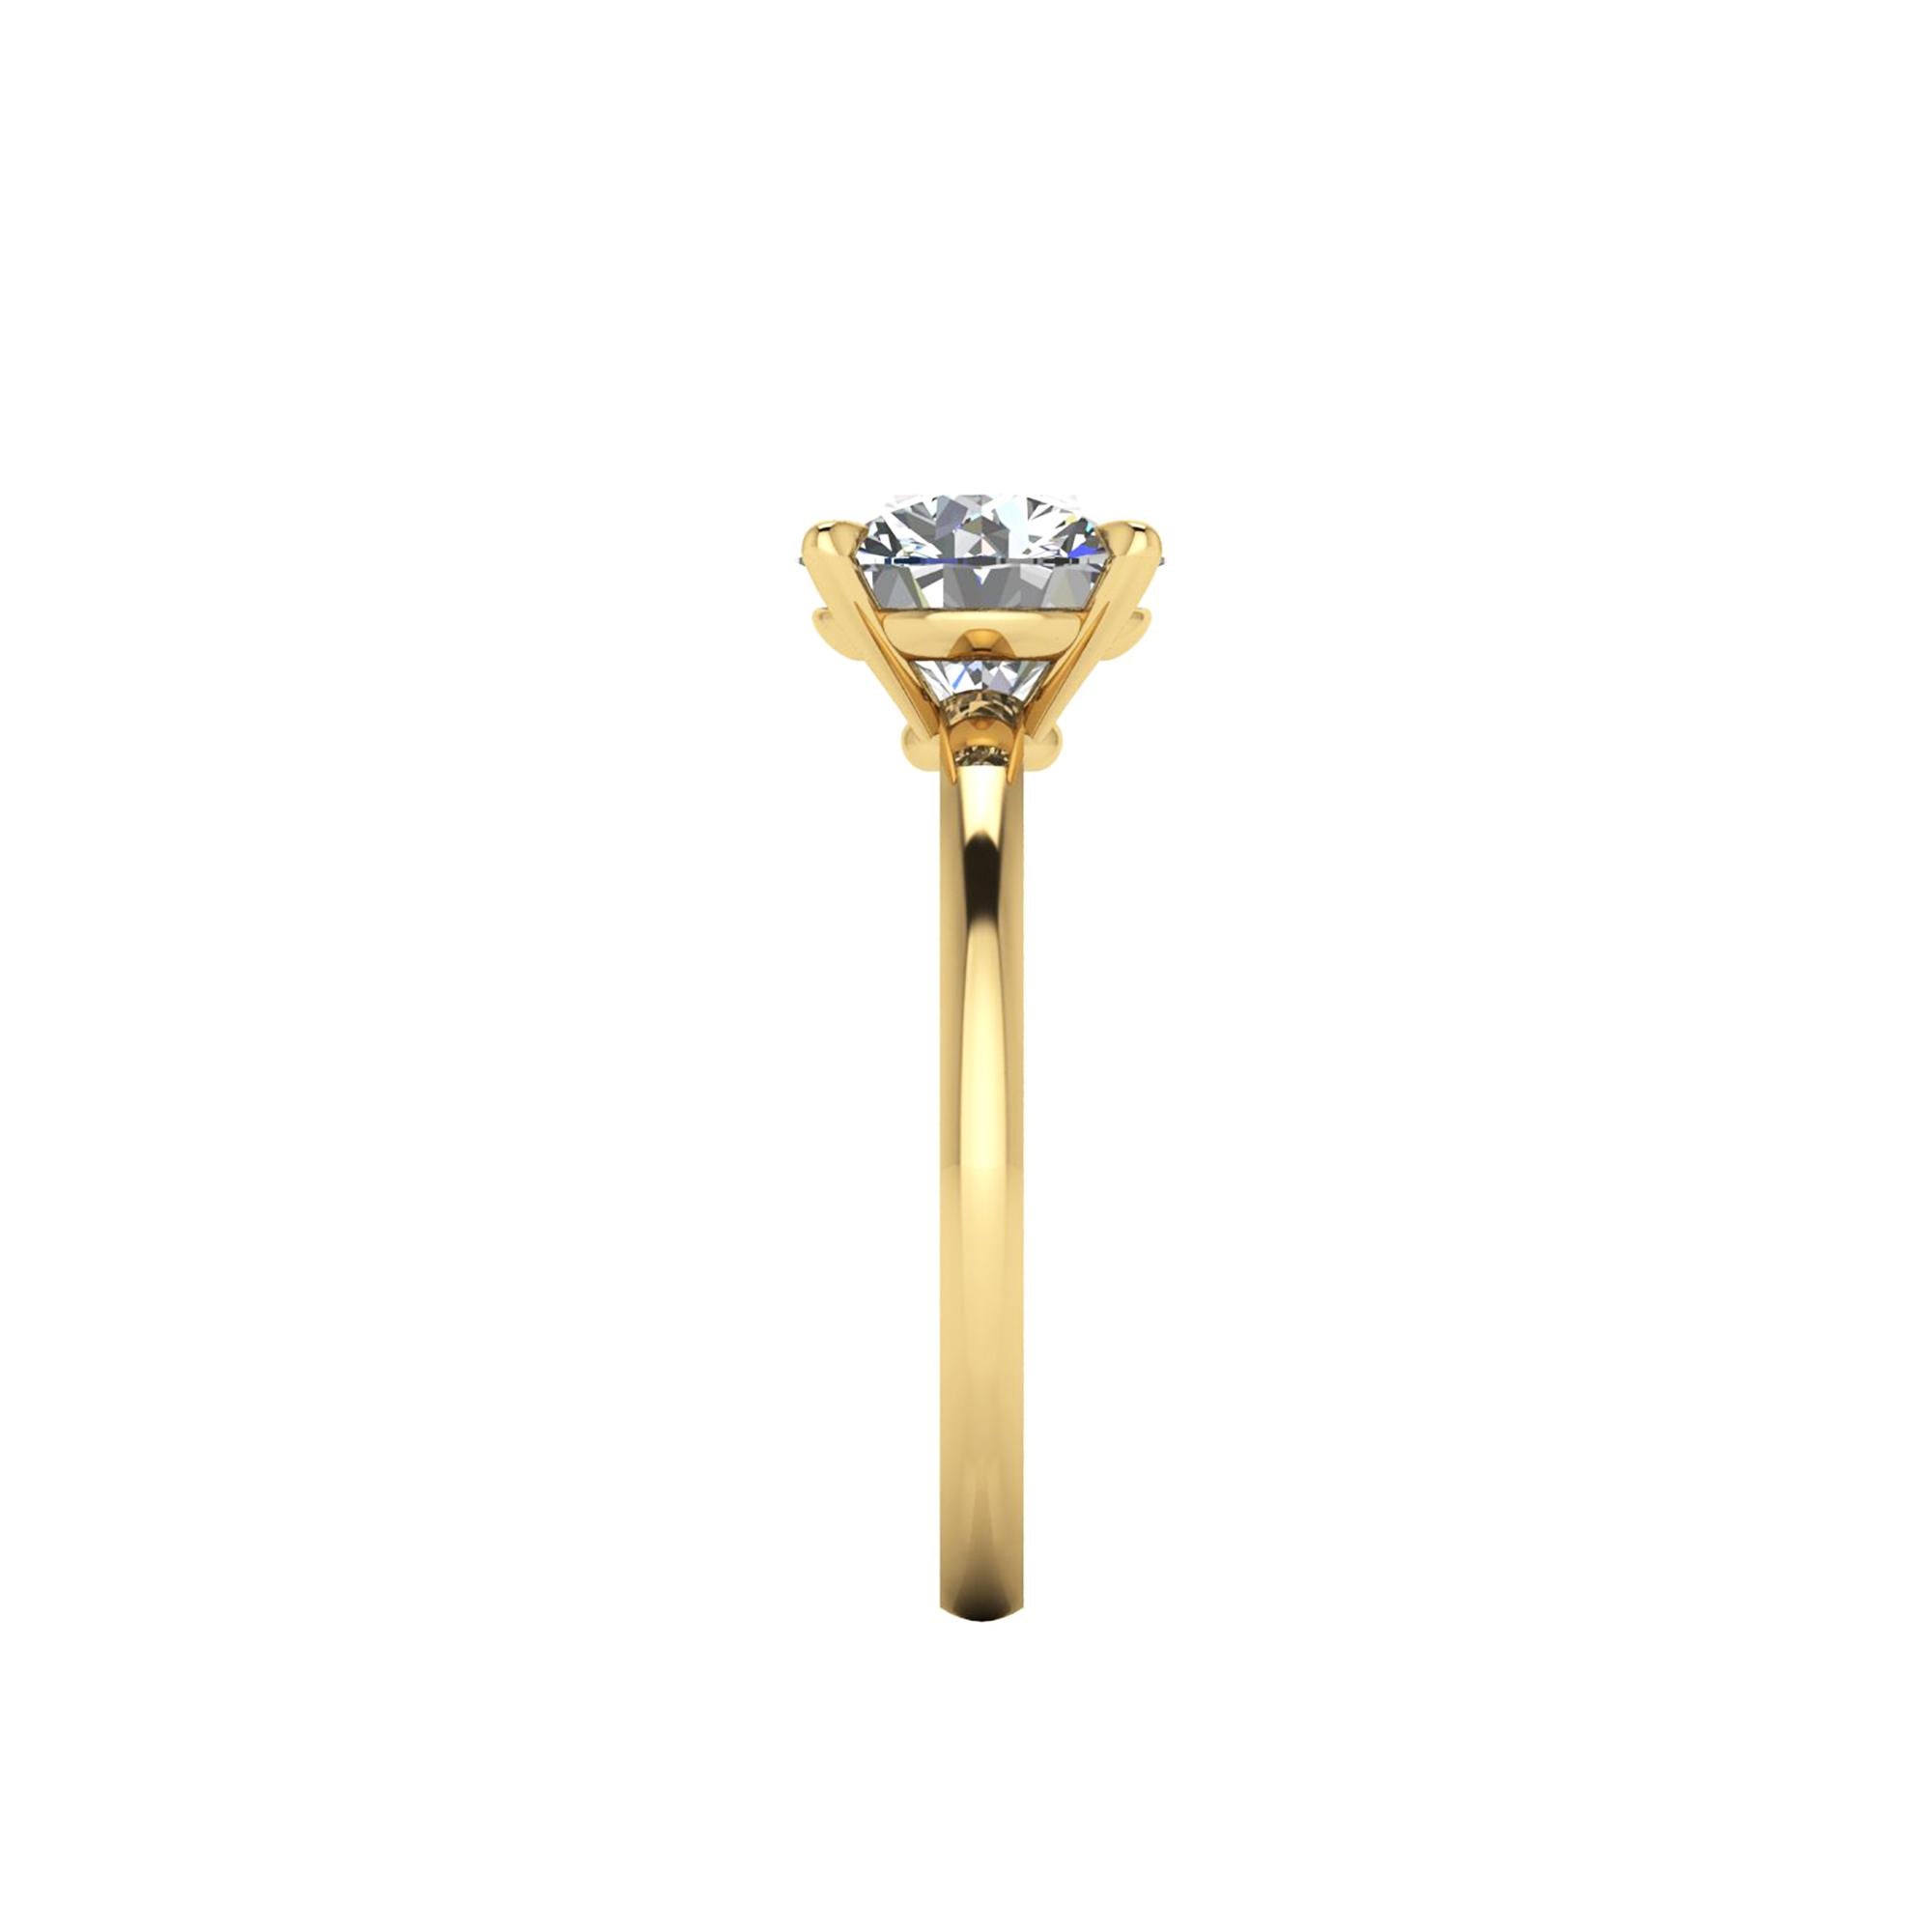 GIA-zertifizierter runder weißer Diamant von 2,01 Karat, Farbe F, Reinheit VVS2, dreifach ausgezeichnet in Schliff, Symmetrie und Politur, eingefasst in einen handgefertigten Solitär-Verlobungsring aus 18 Karat Gelbgold, hergestellt in New York